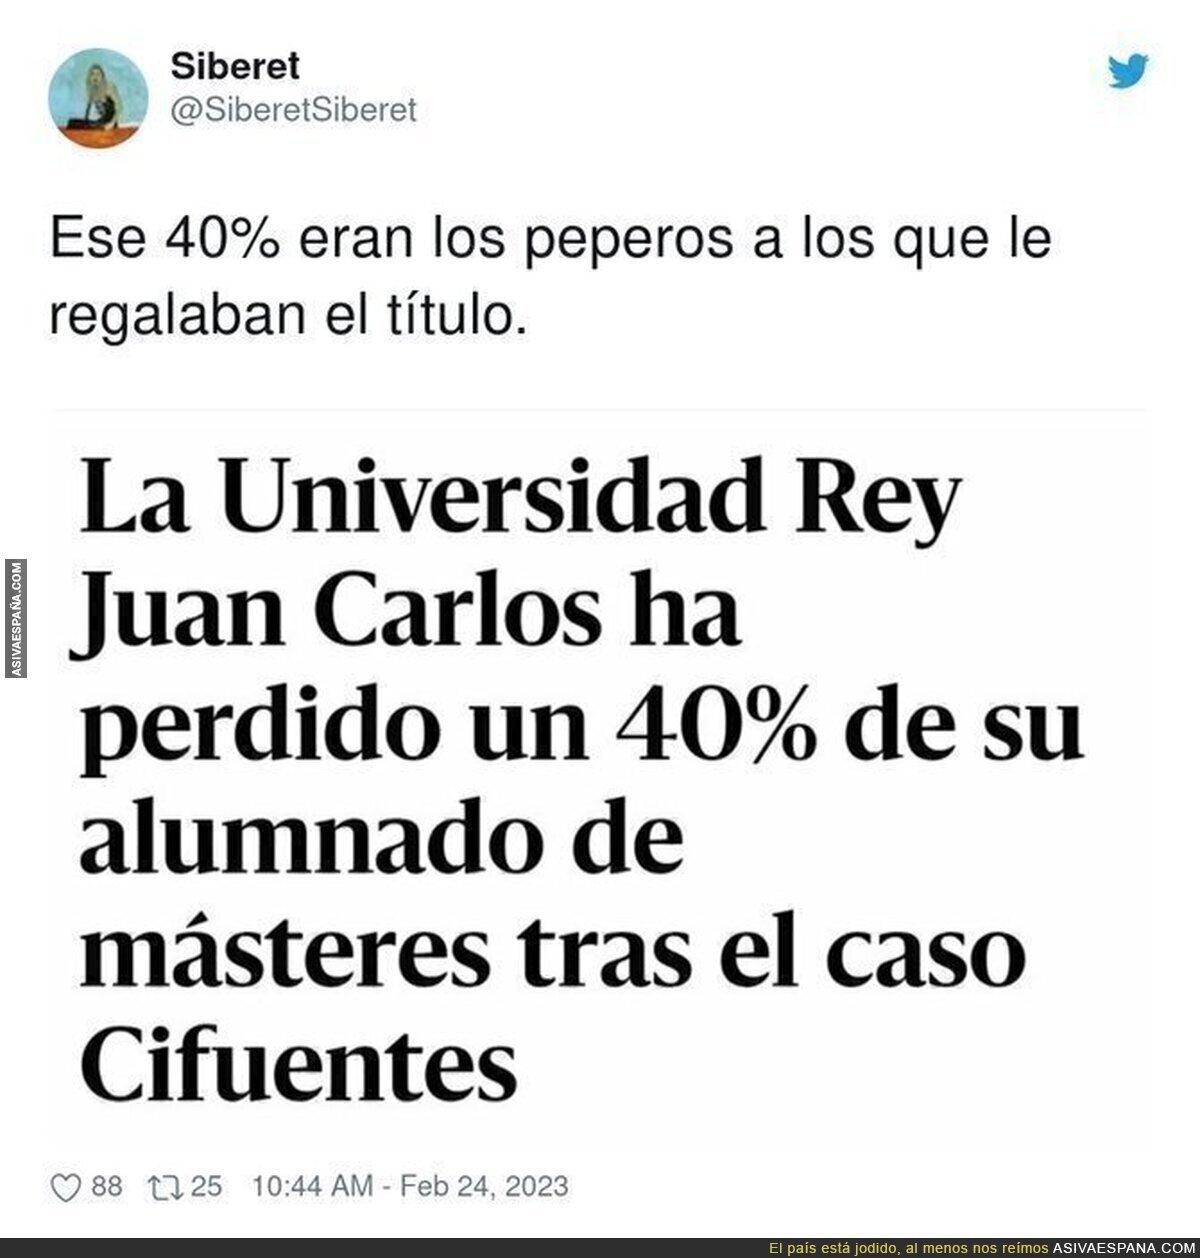 Cifuentes hace perder el prestigio a la Universidad Rey Juan Carlos